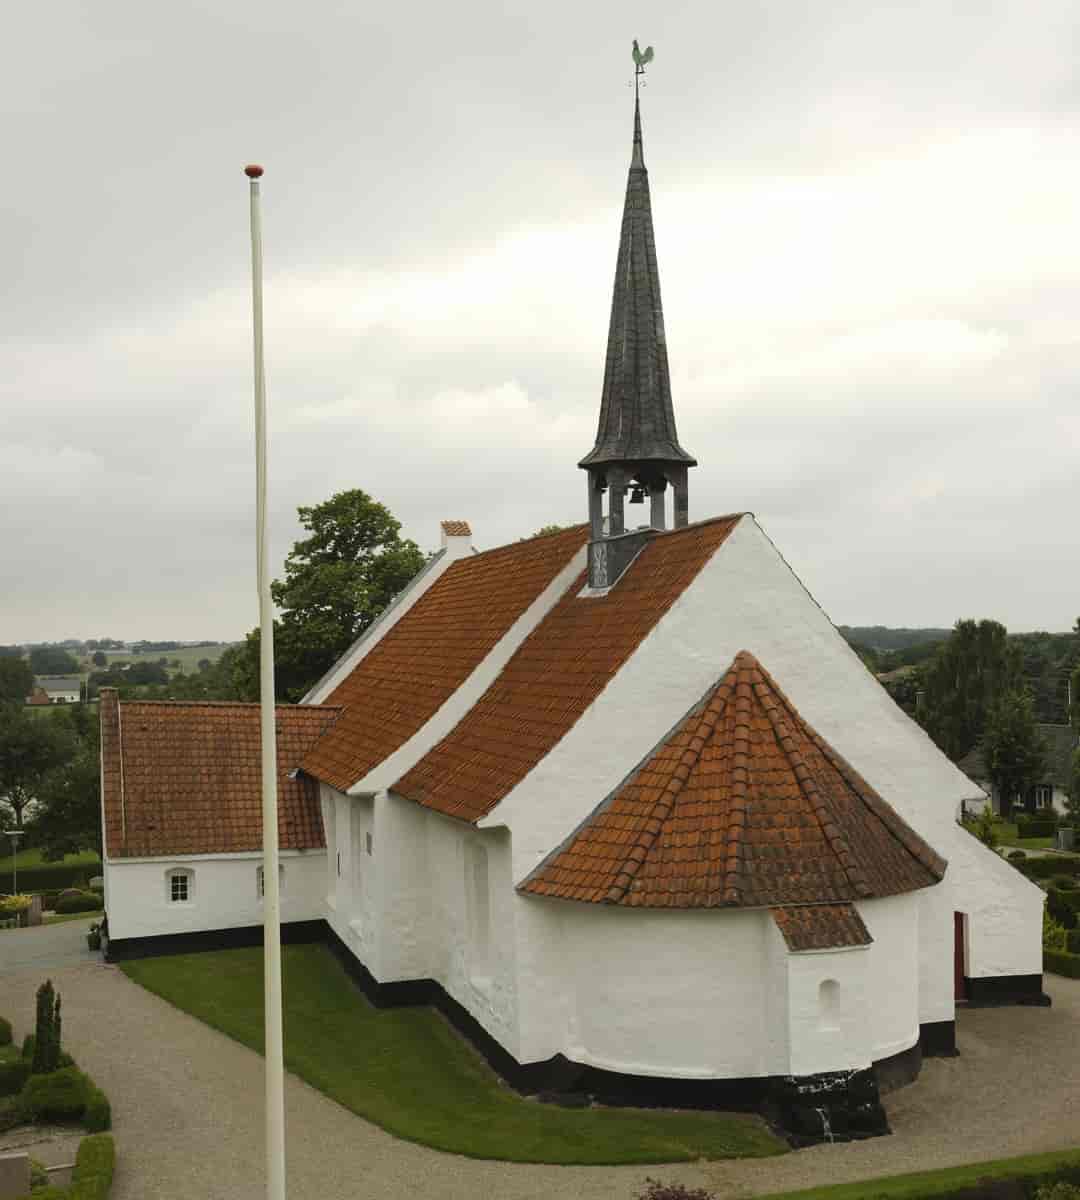 Tandslet Kirke